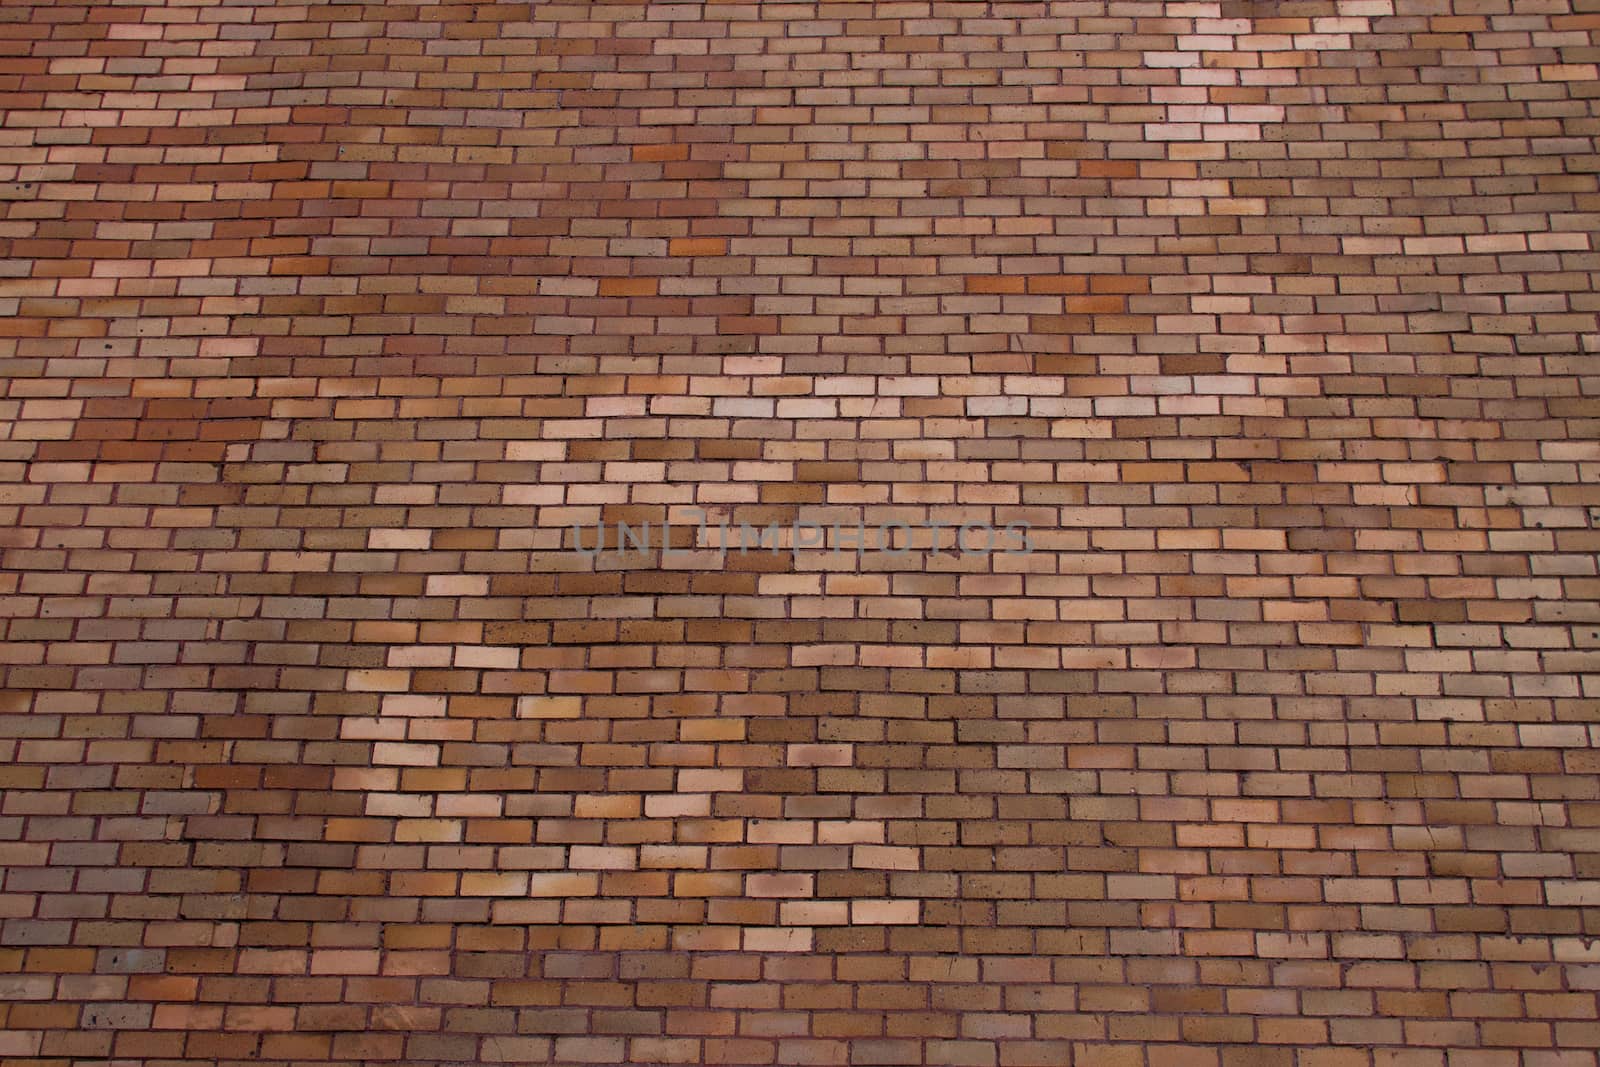 Brick Wall by nopparats